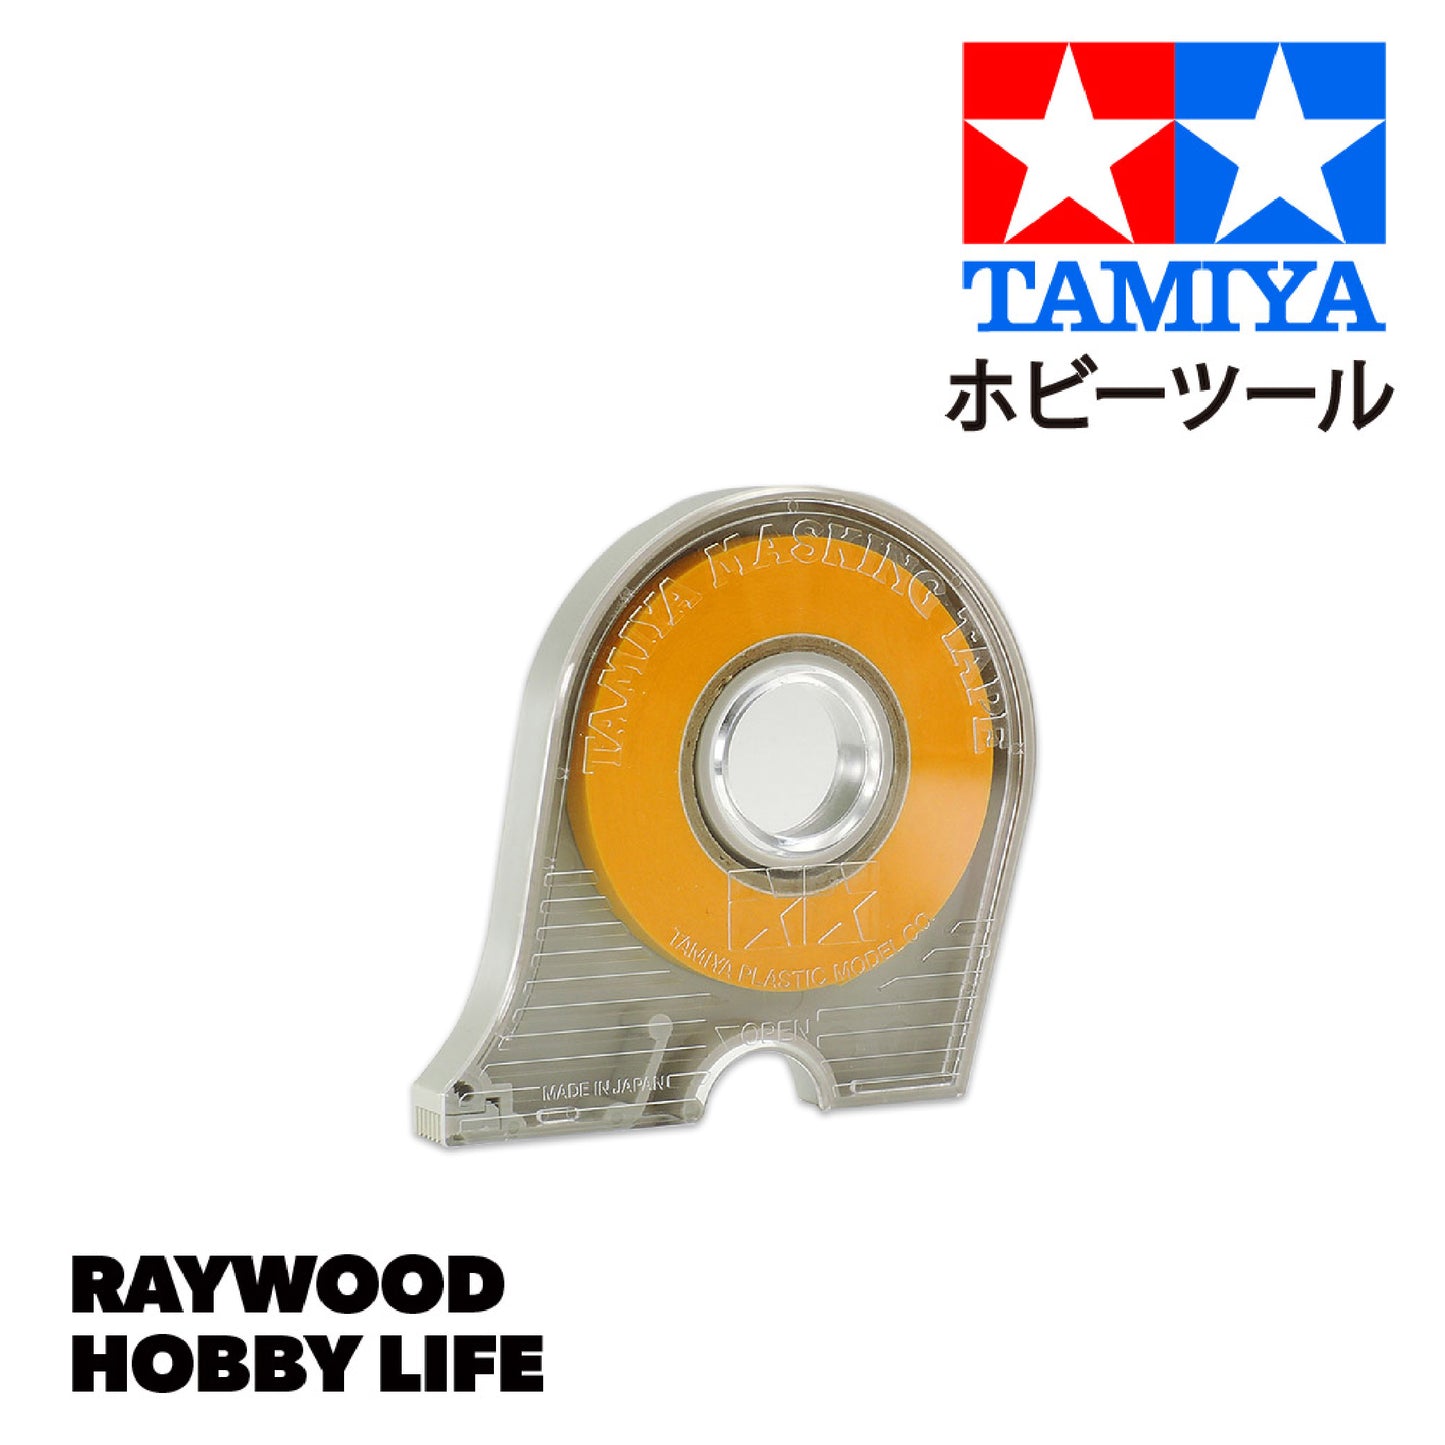 HOBBY LIFE タミヤ マスキングテープ6mm